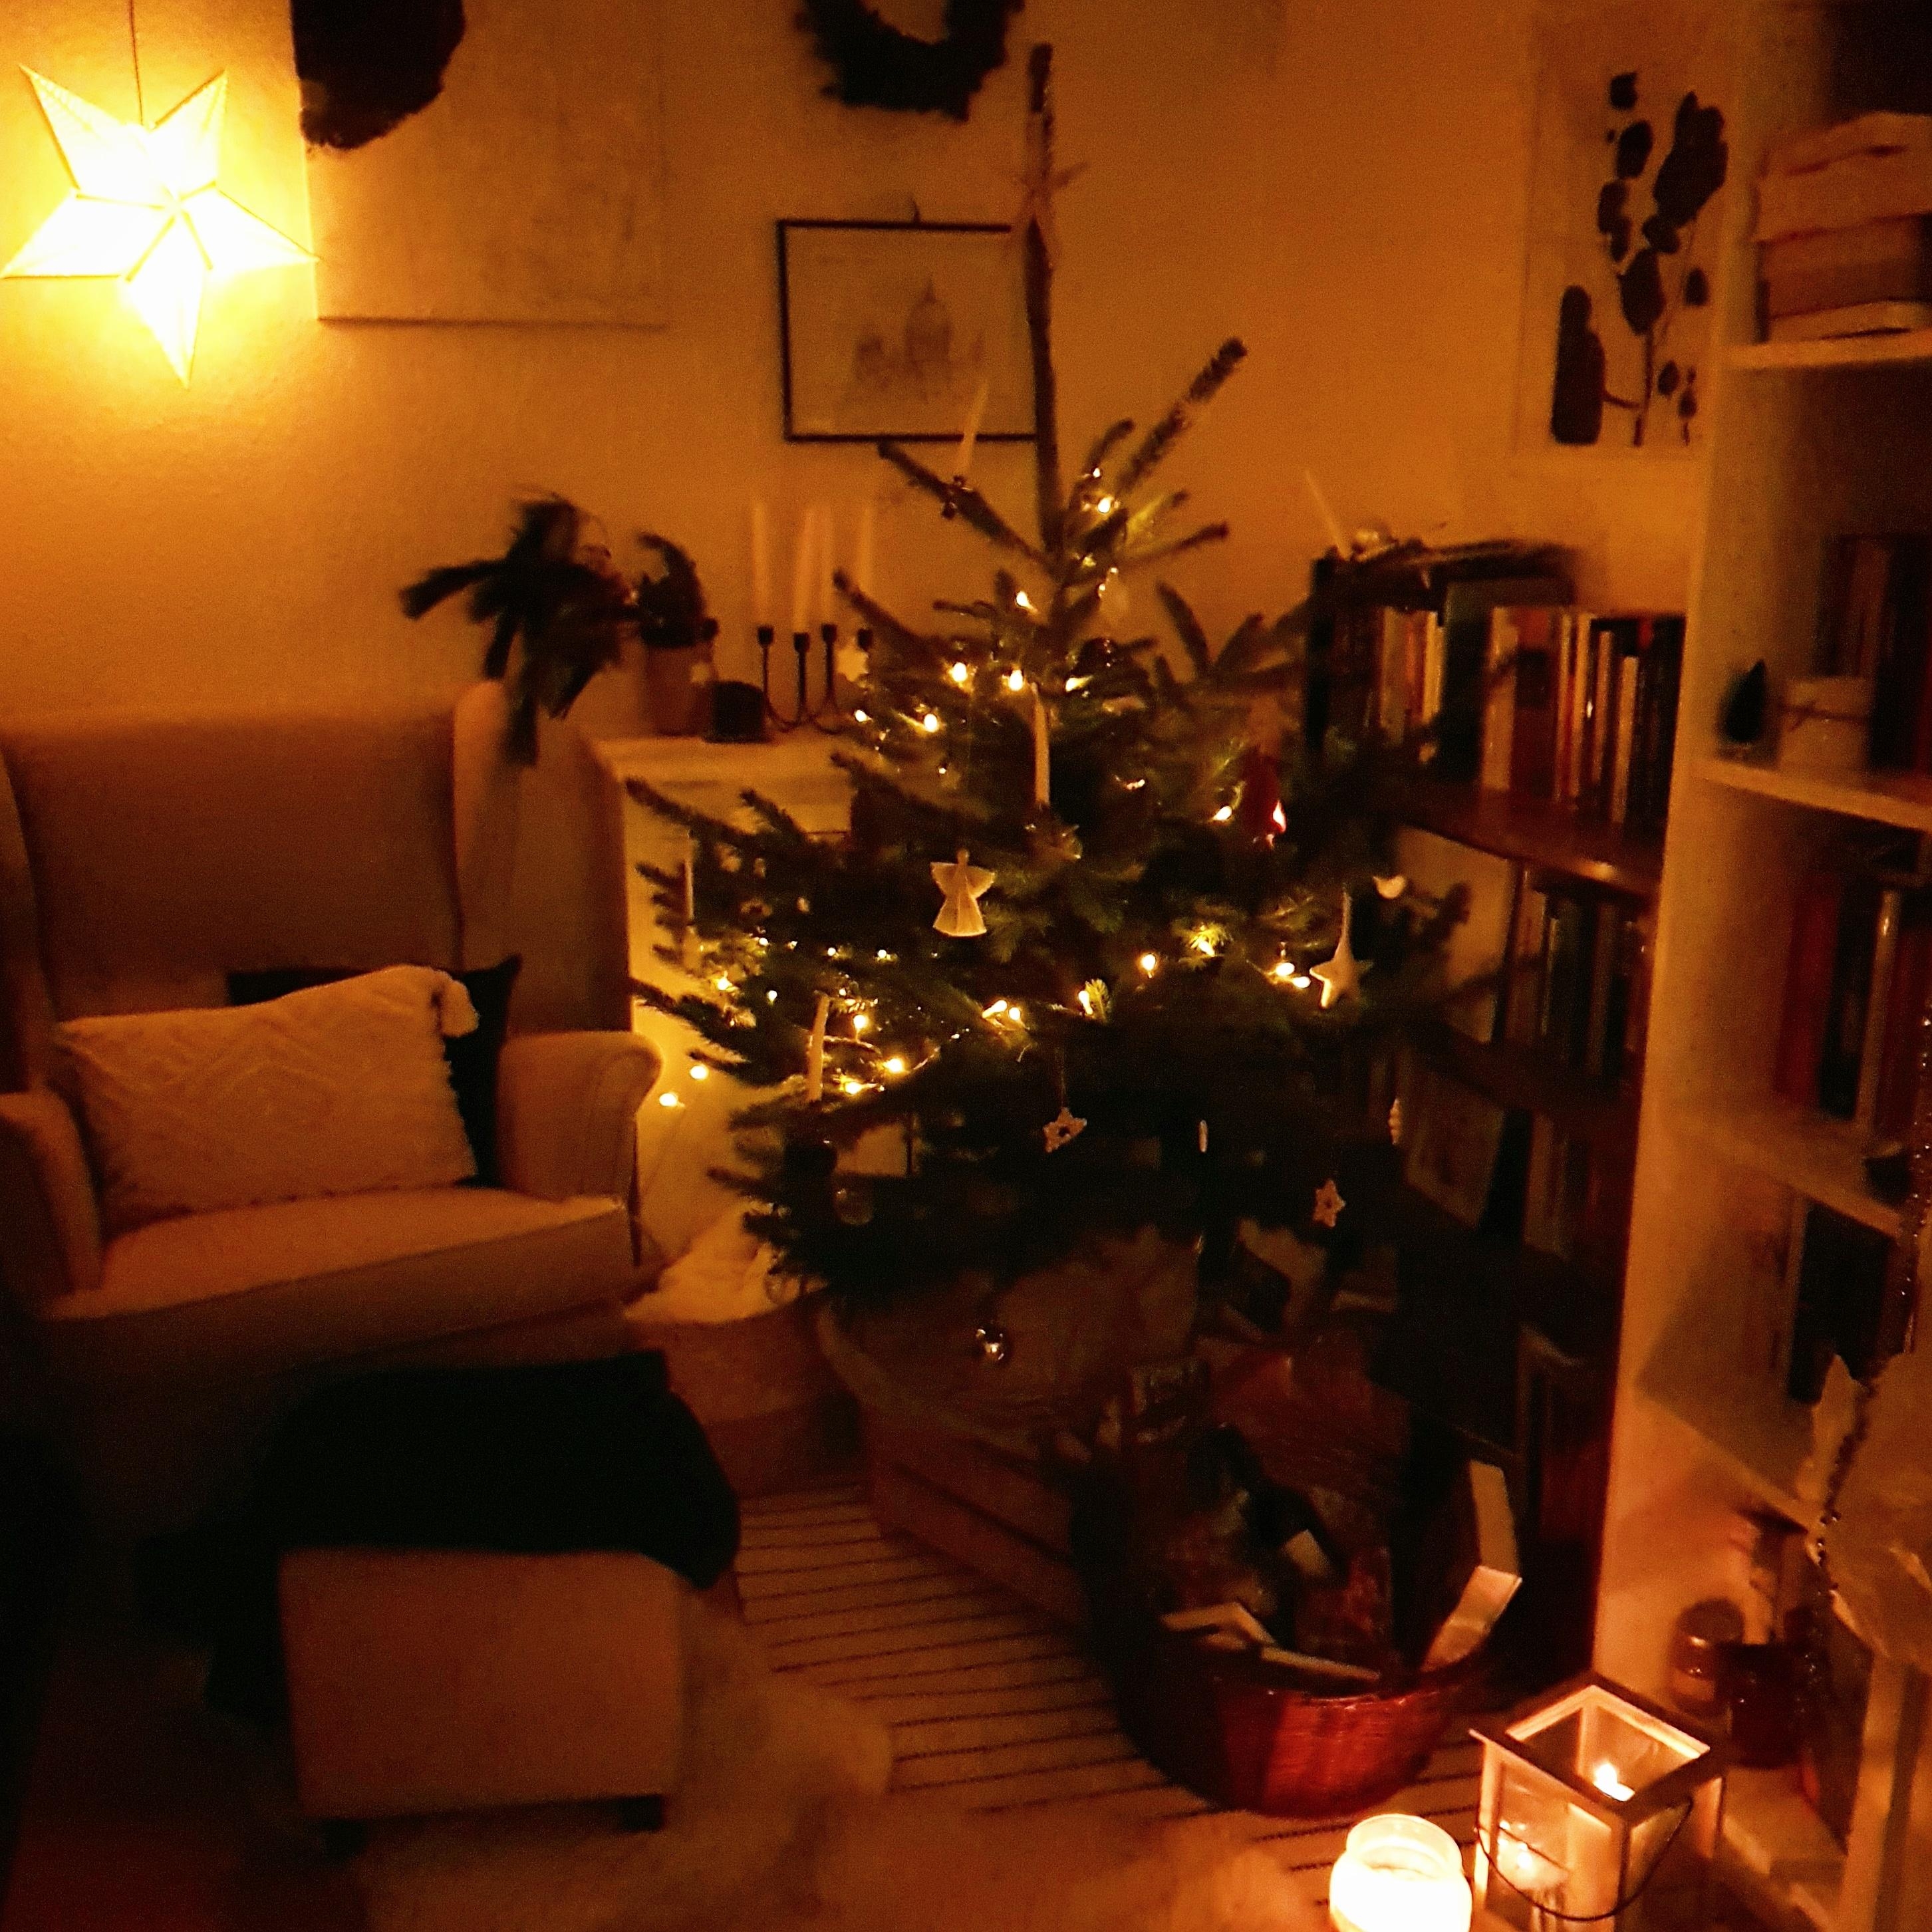 Familie war schön, aber daheim zu sein ist auch wunderbar ☆ 
#weihnachtsbaum #kerzen #fell #hygge #peace #quiet #peace